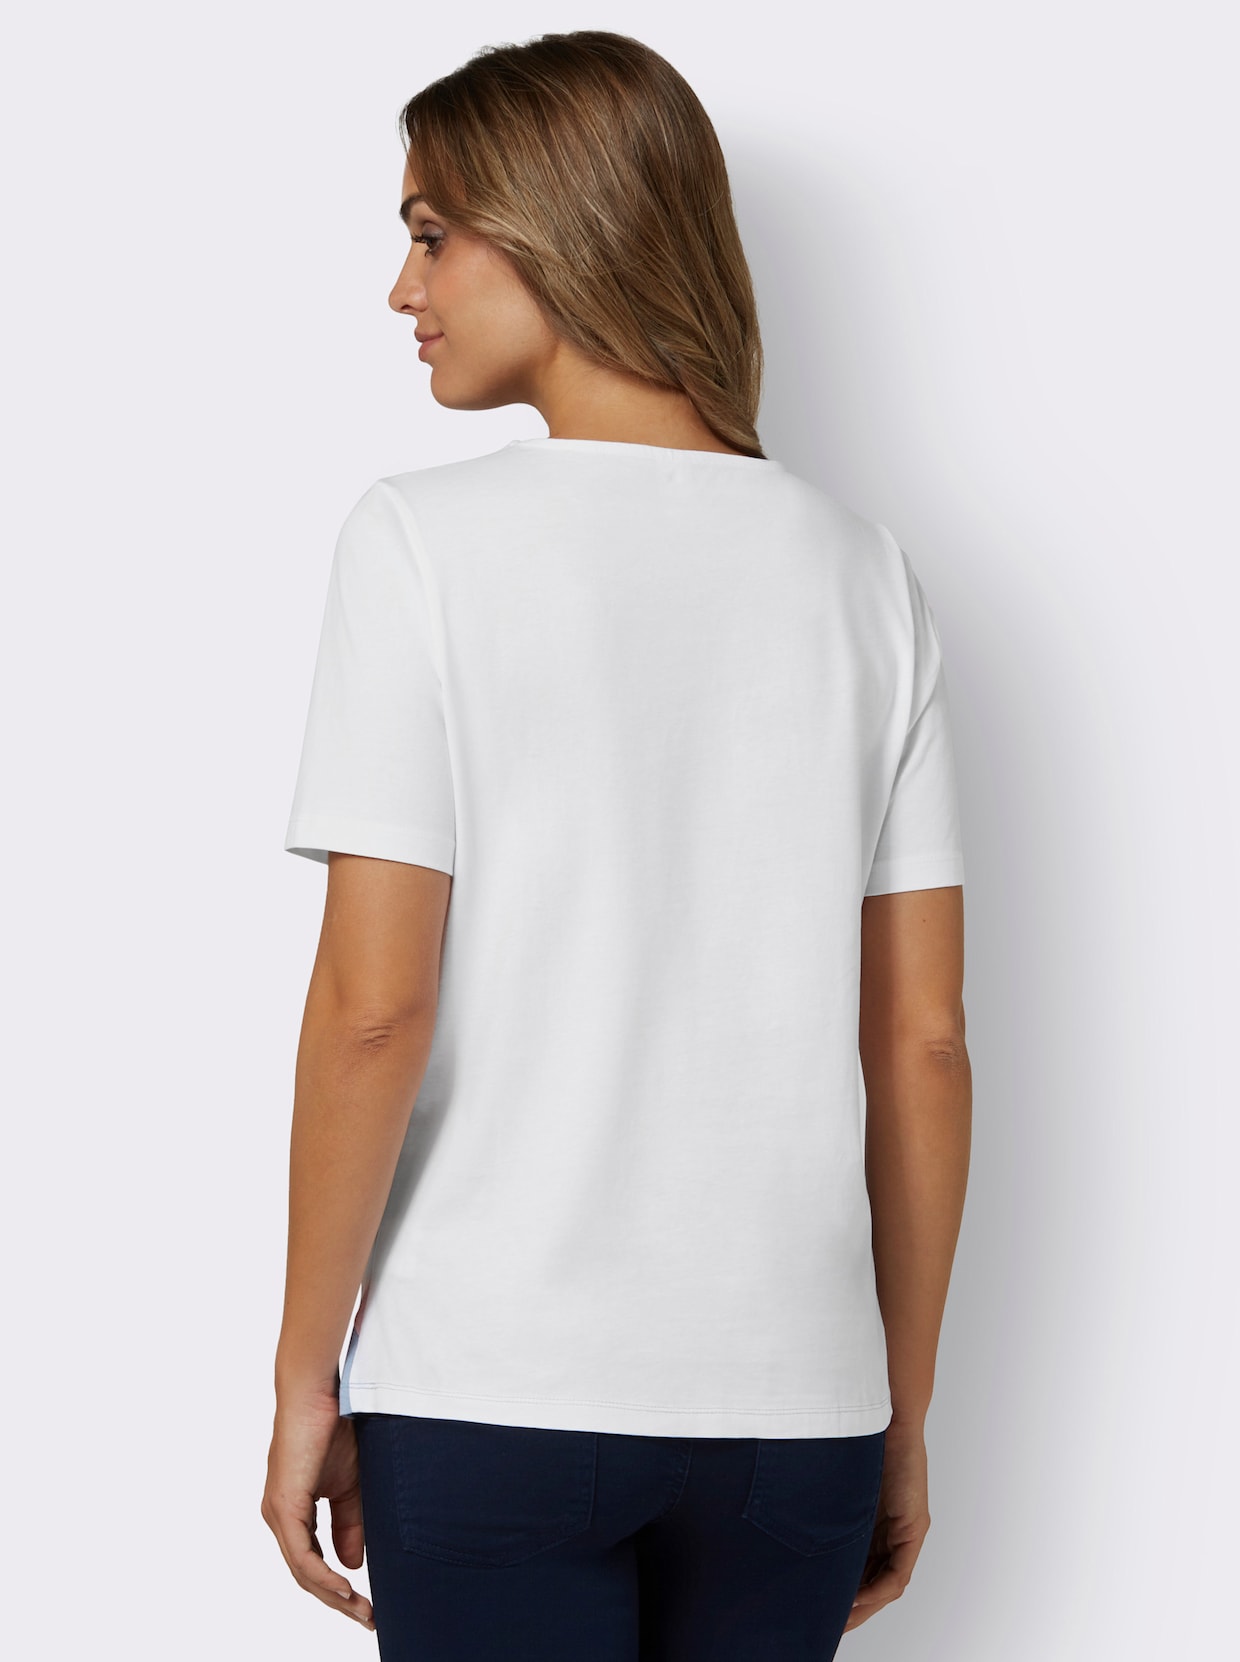 Tričko s krátkým rukávem - bílá-modrá